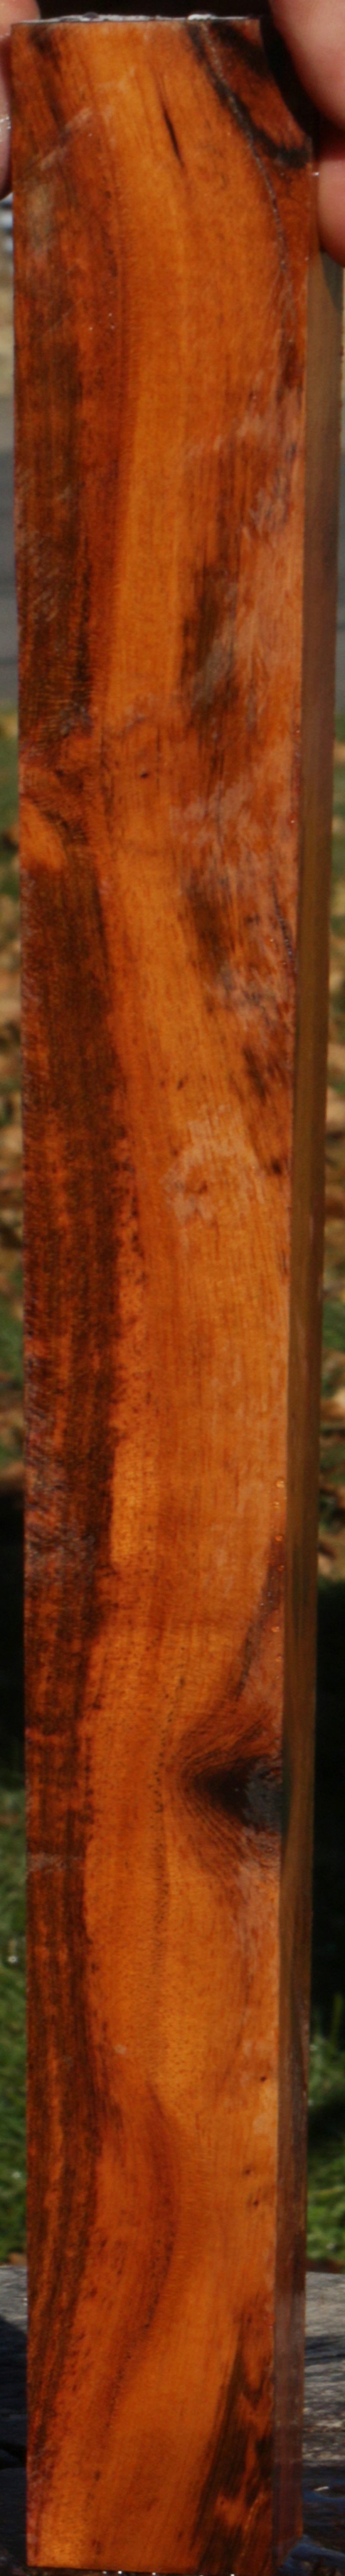 Snakewood Lumber